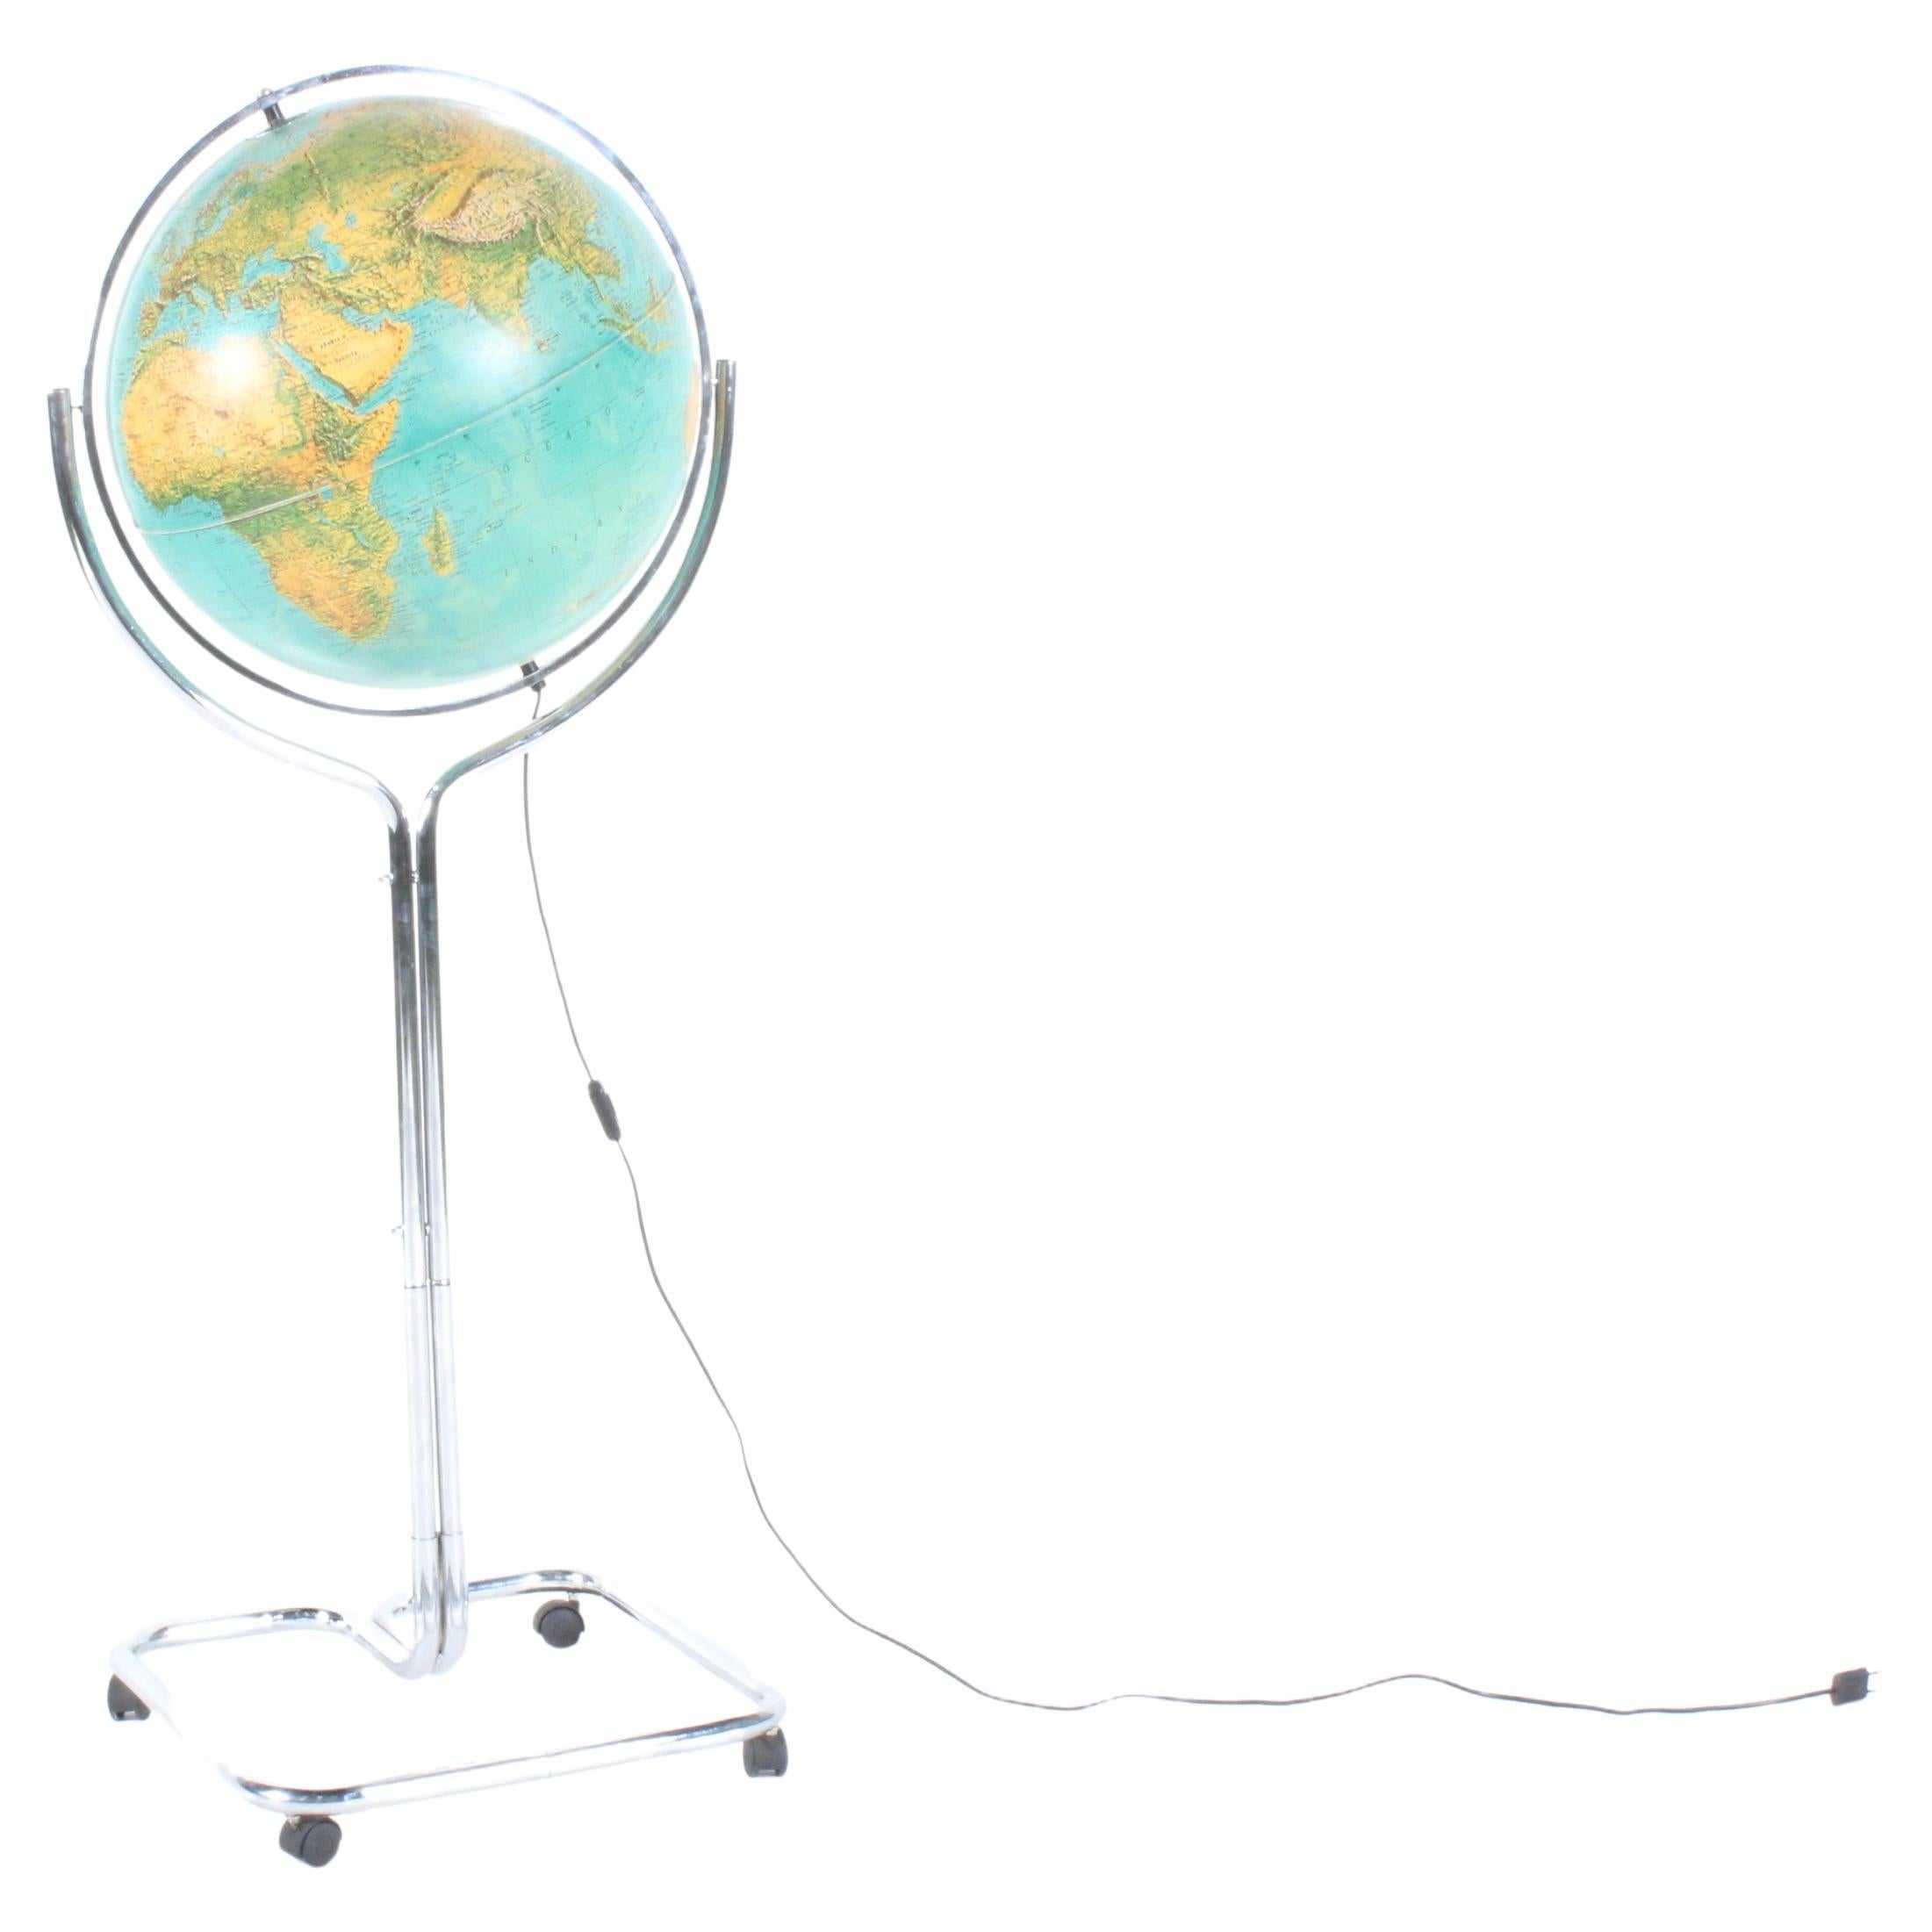 Superbe globe italien autoportant par Ricoscope Florence, livraison gratuite